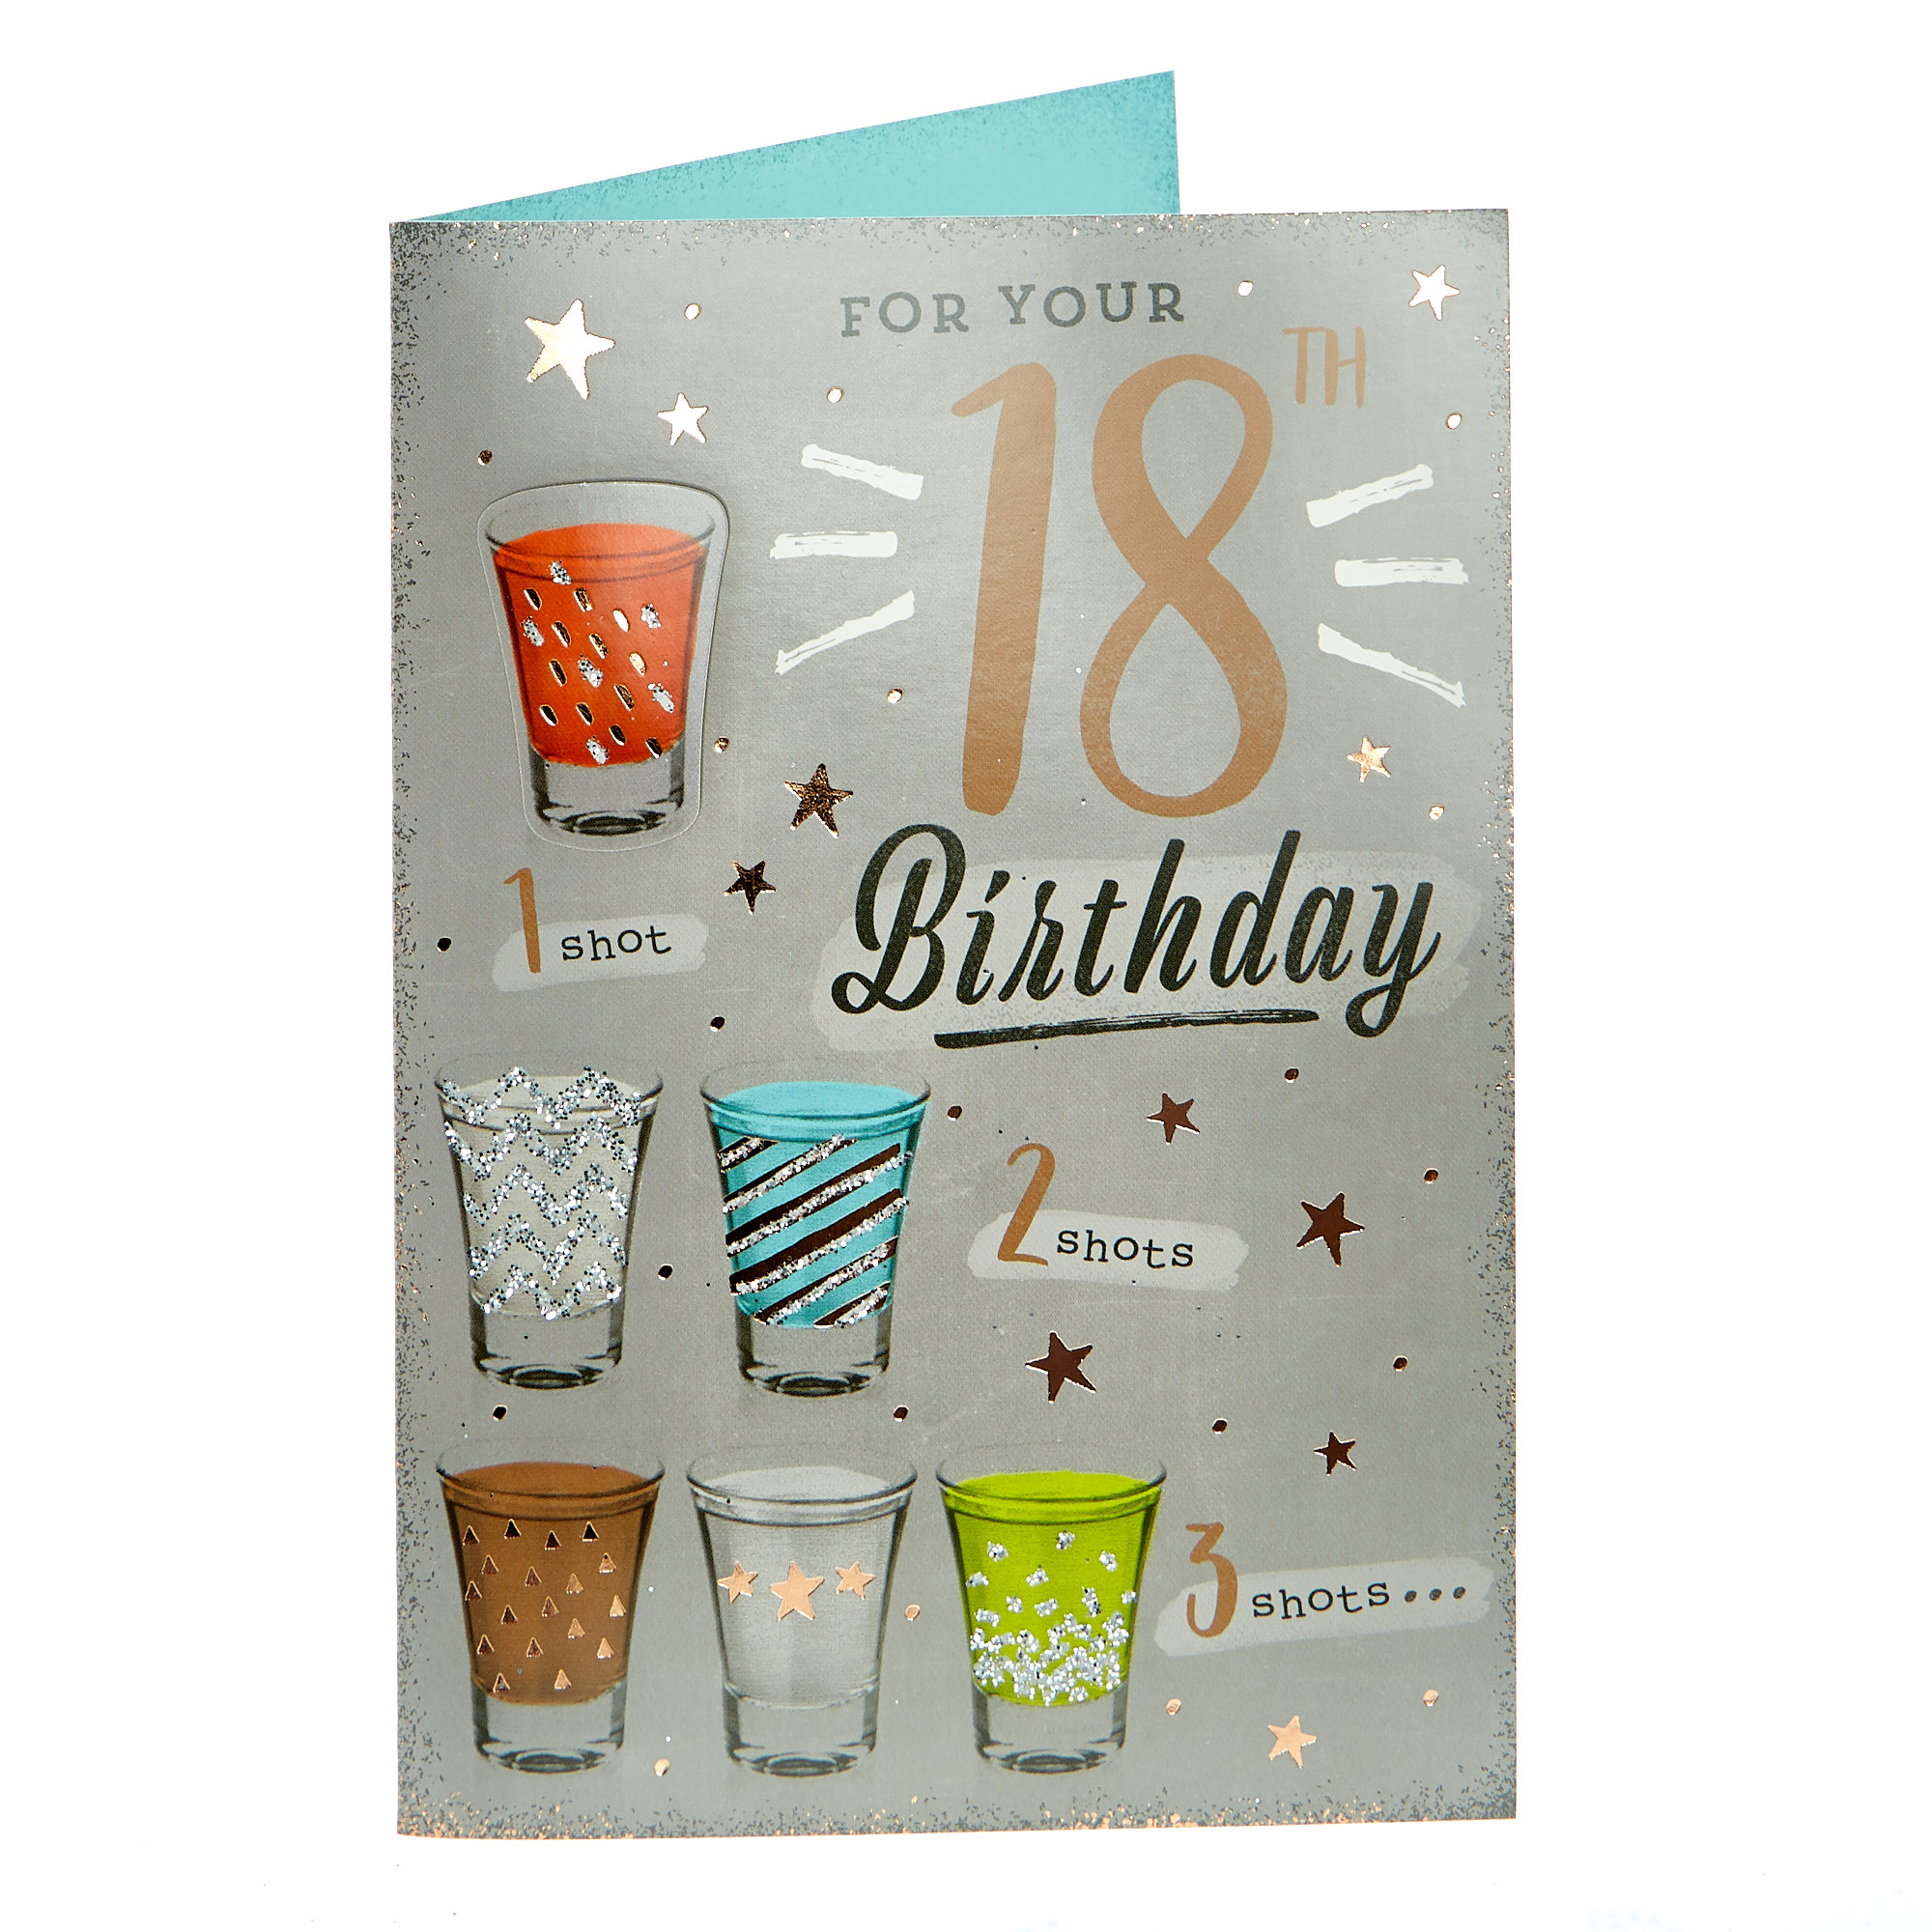 18th Birthday Card - 1 Shot, 2 Shots, 3 Shots 